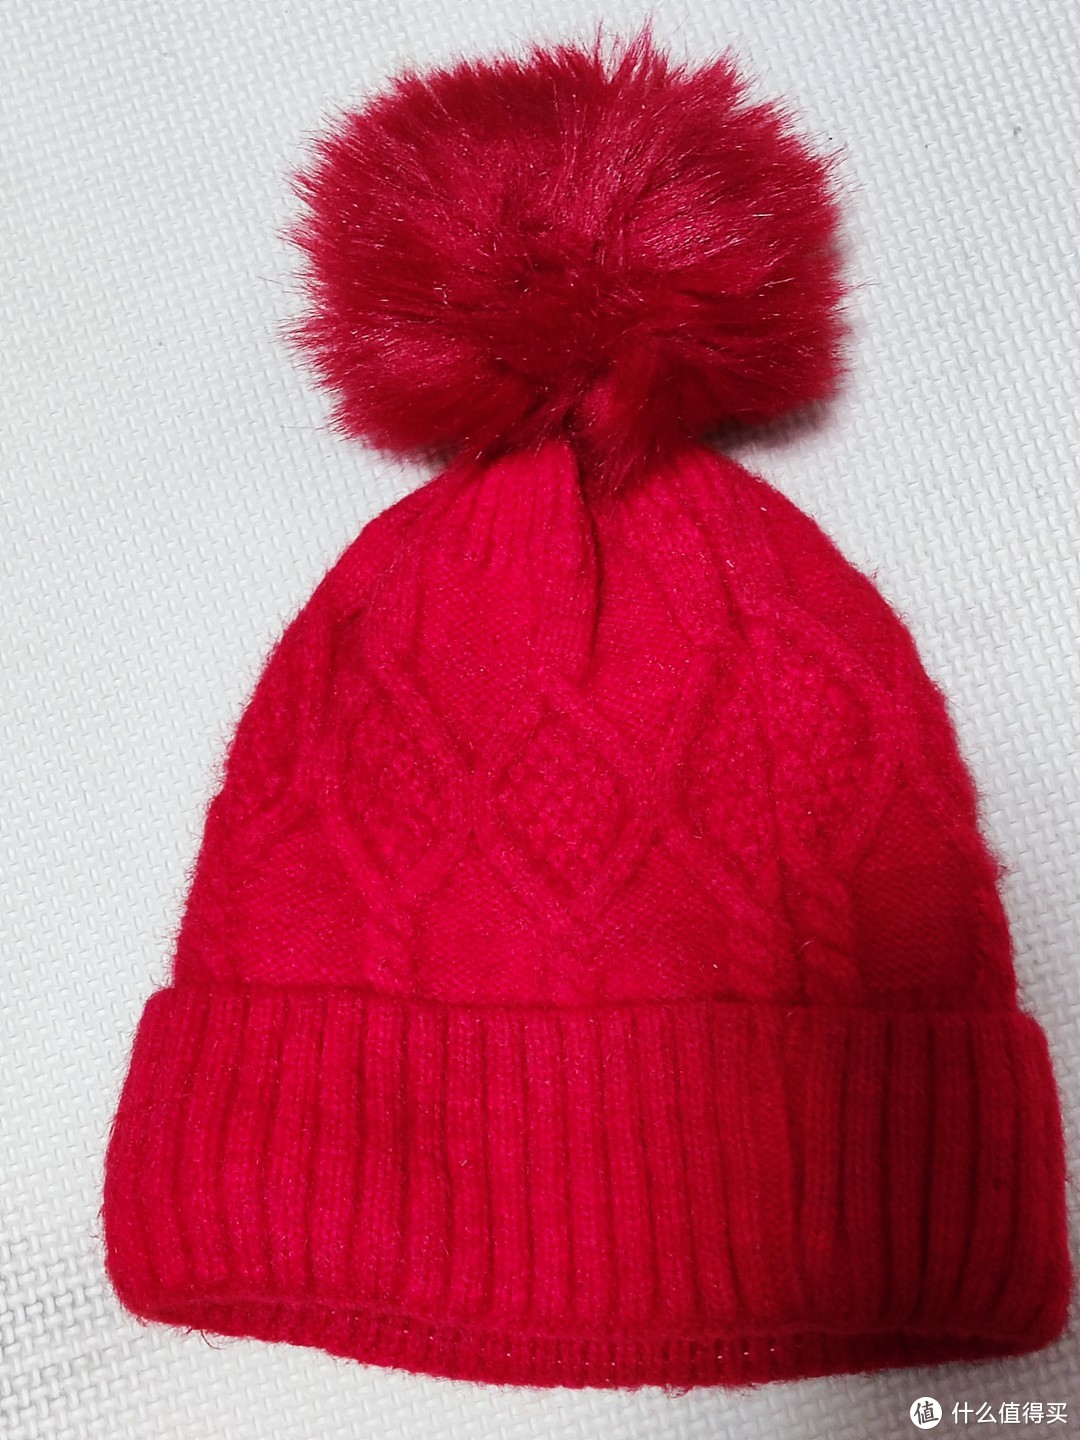 孩子最喜欢的就是这顶红彤彤的帽子